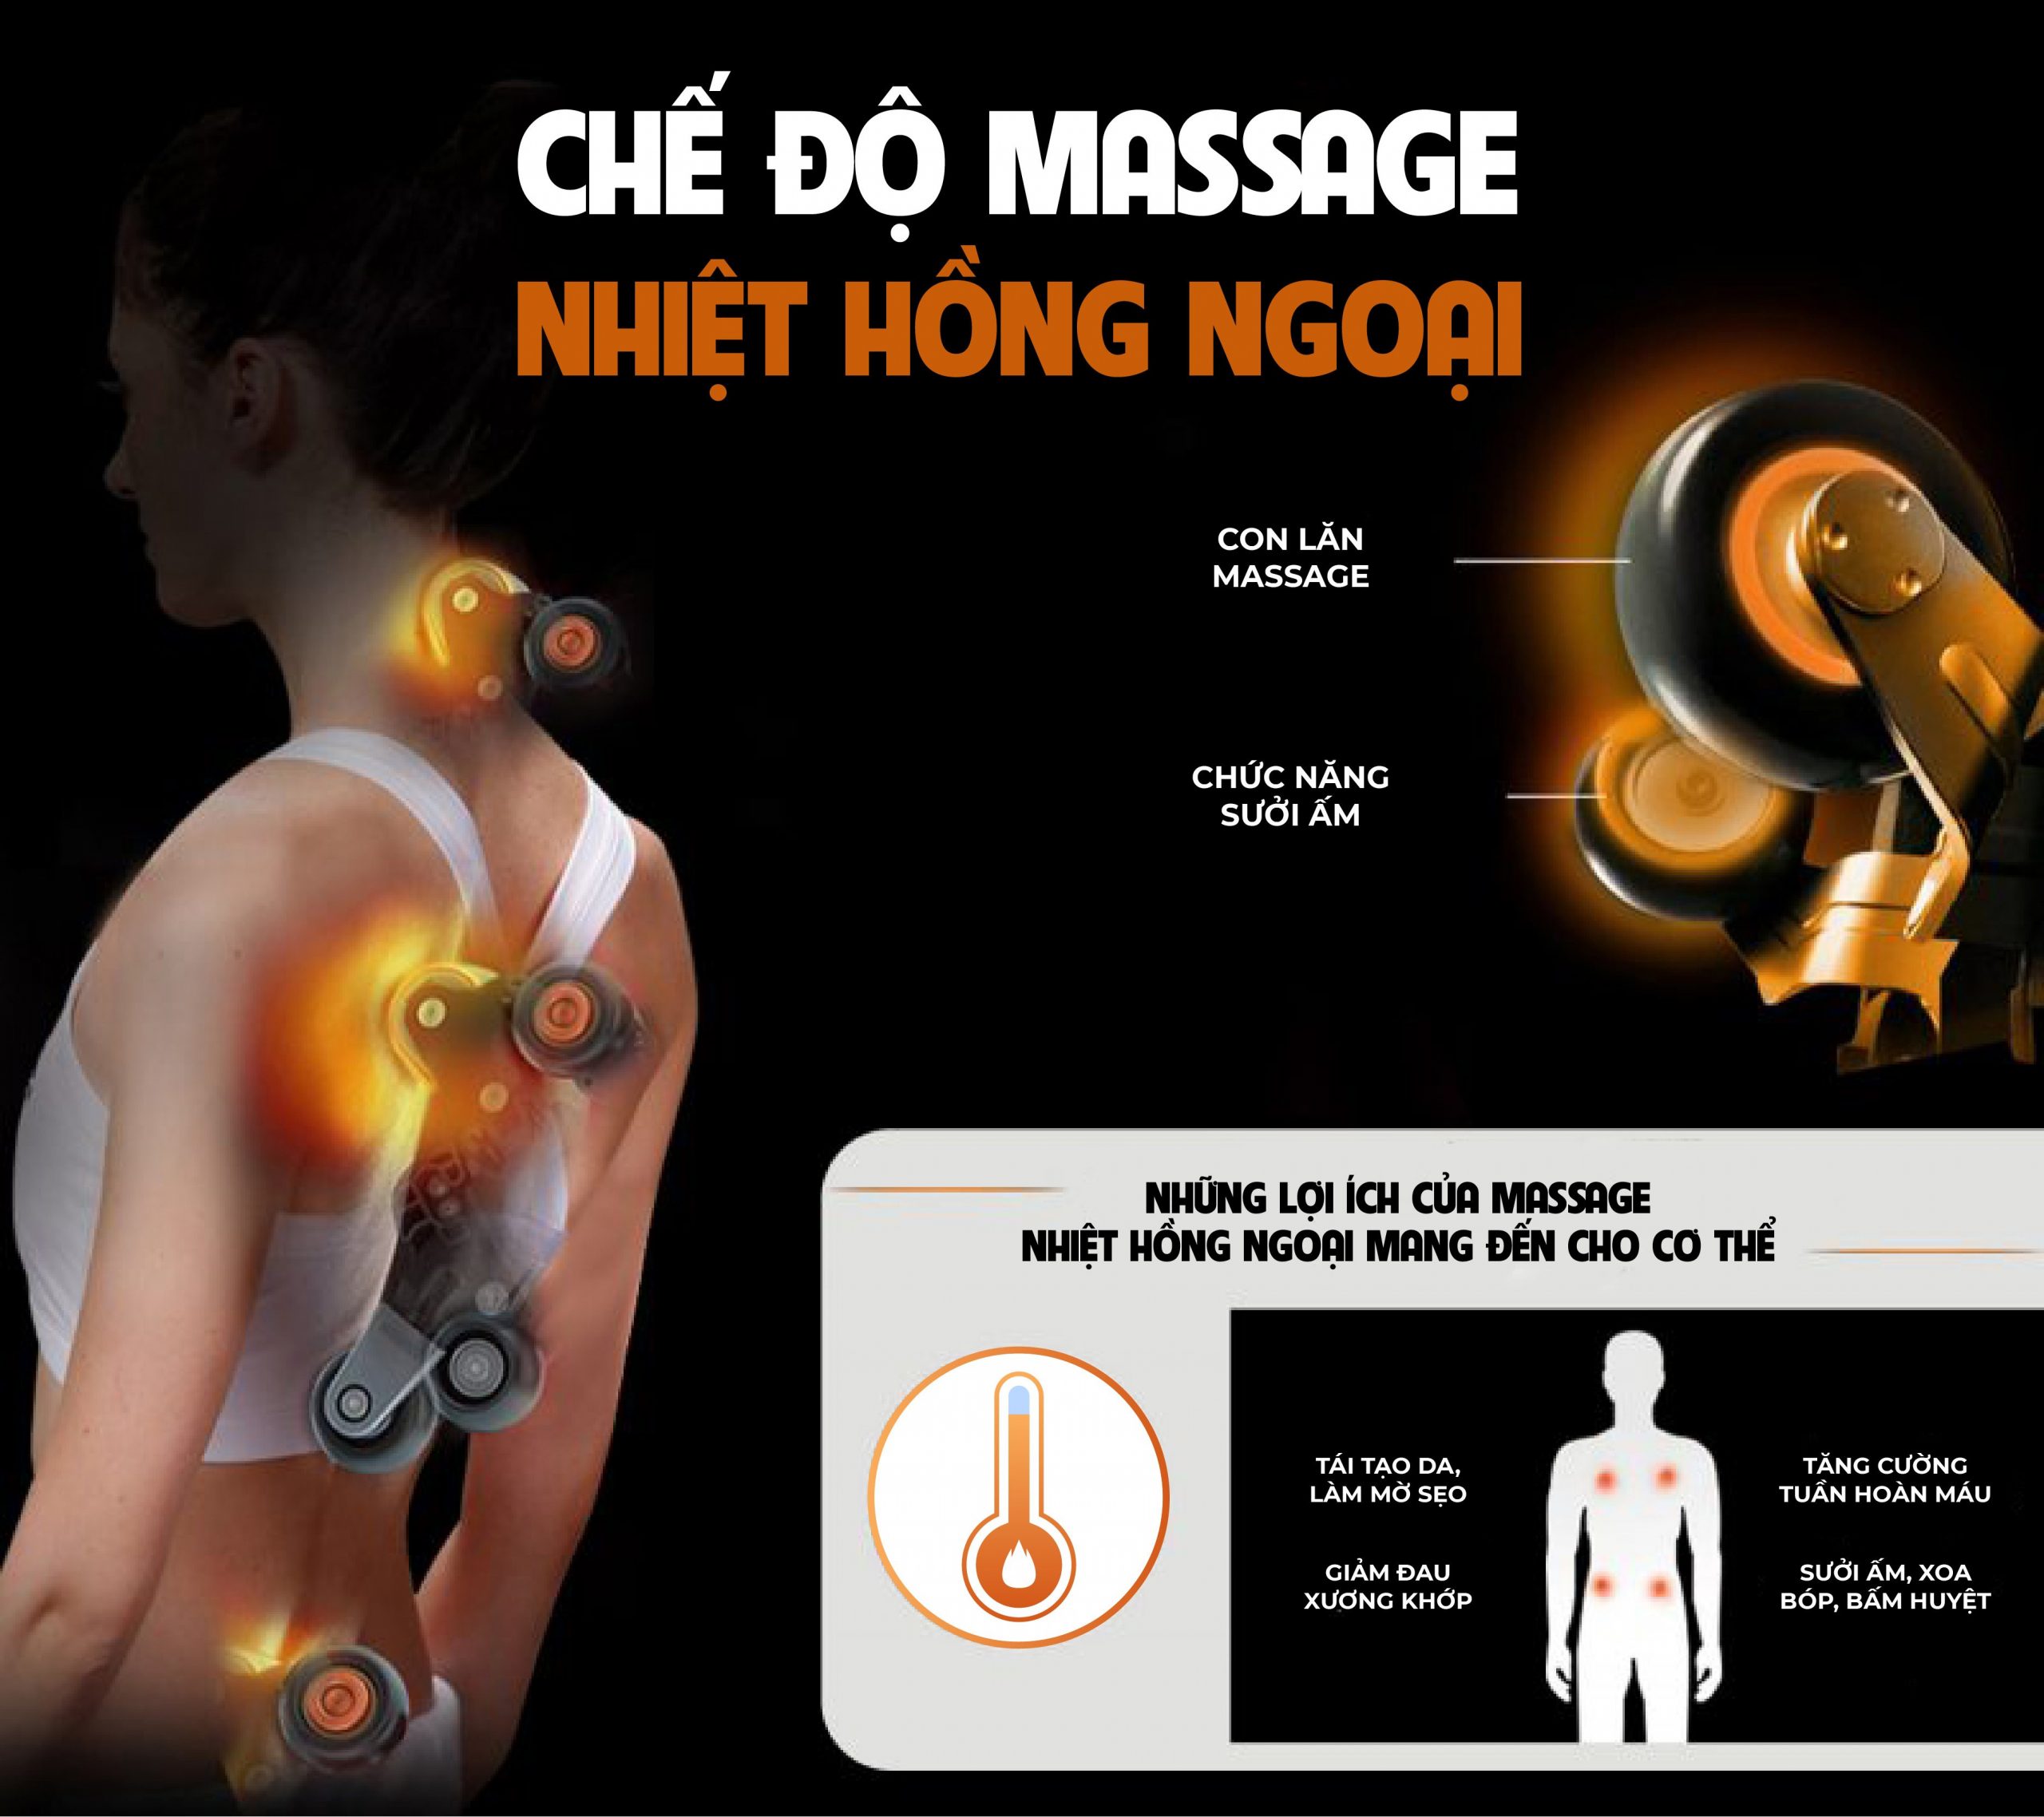 Hệ thống massage nhiệt hồng ngoại đánh bay các cơn đau vùng sống lưng và cột sống của bạn